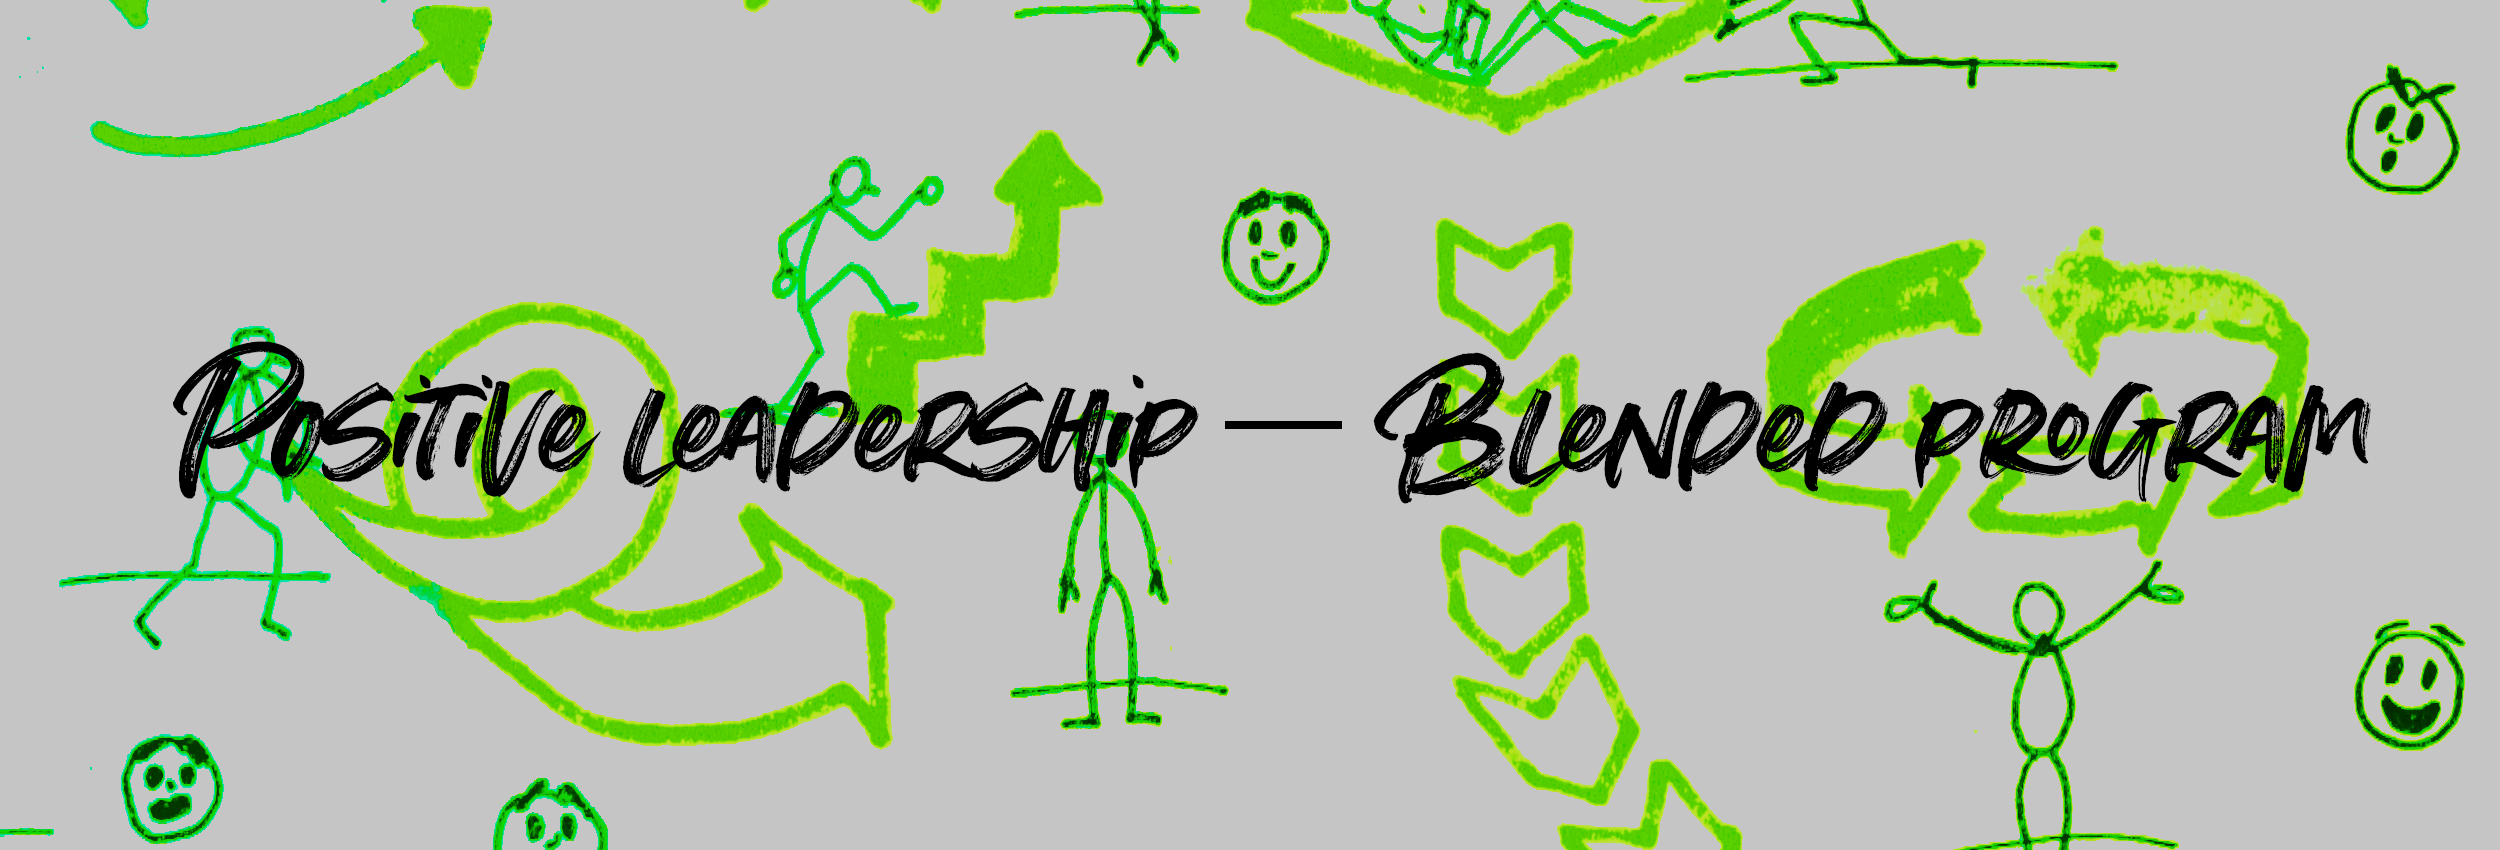 Positive leadership – Blended program